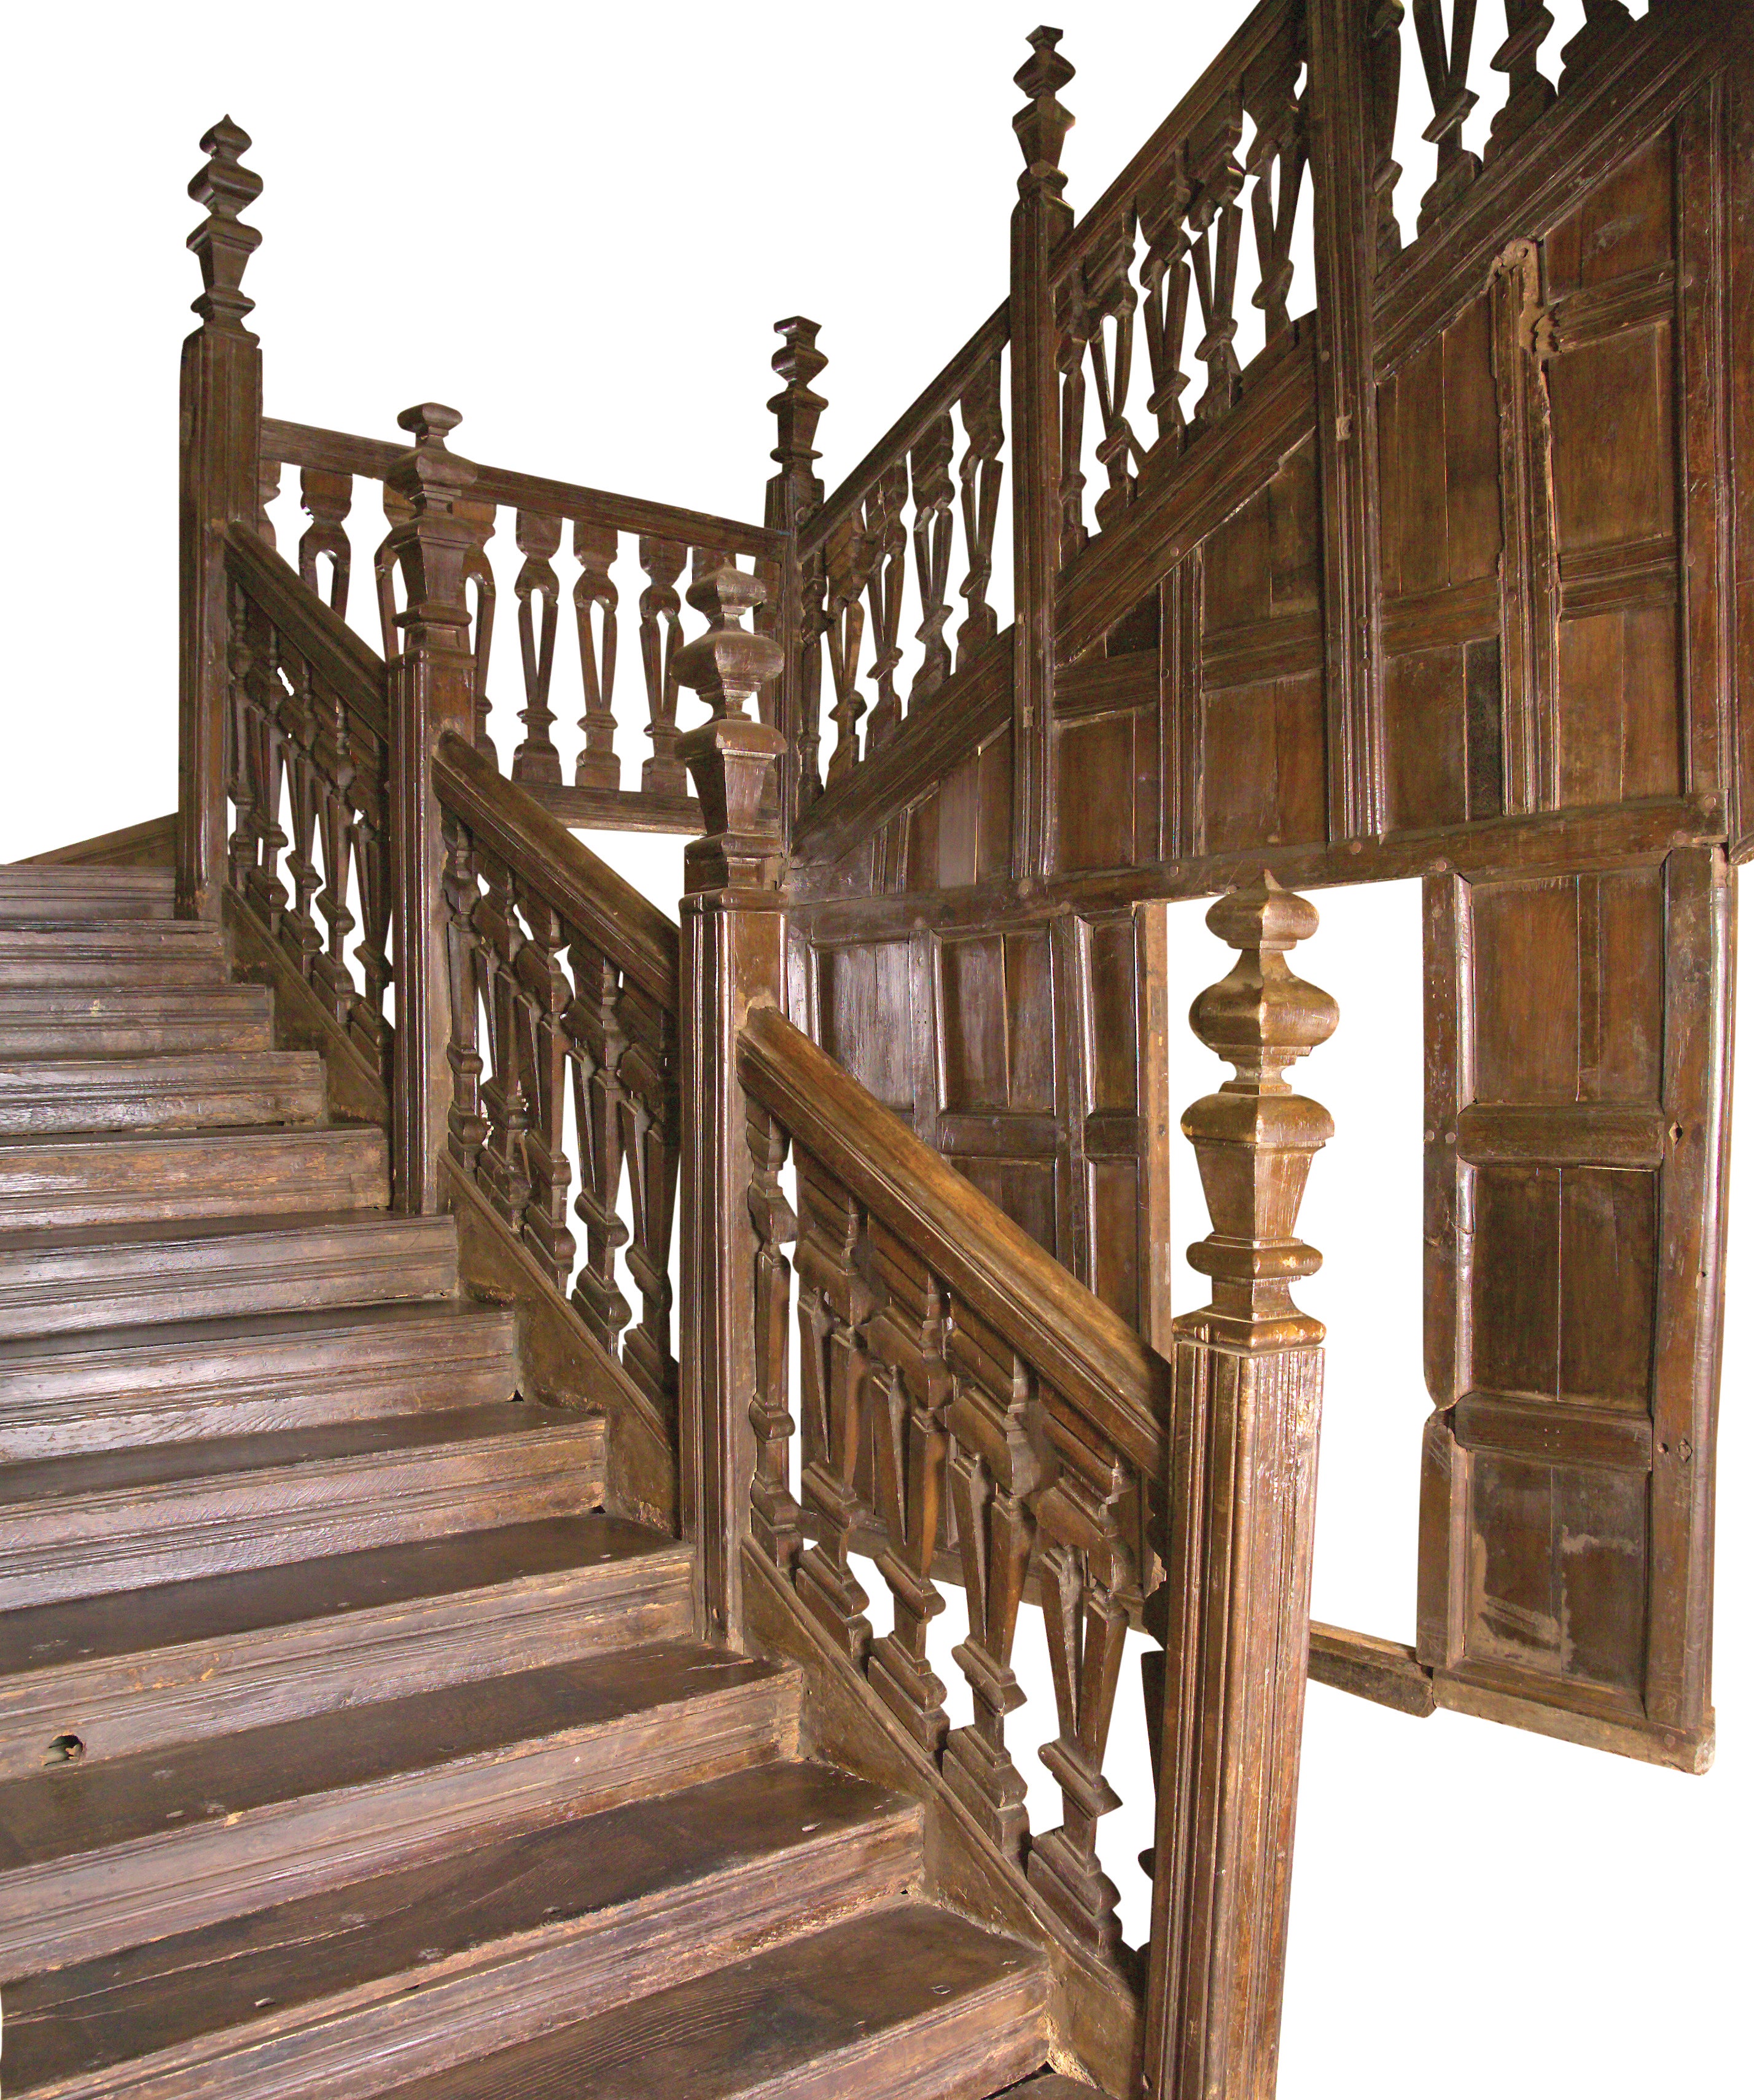 The Llwyn Ynn Staircase